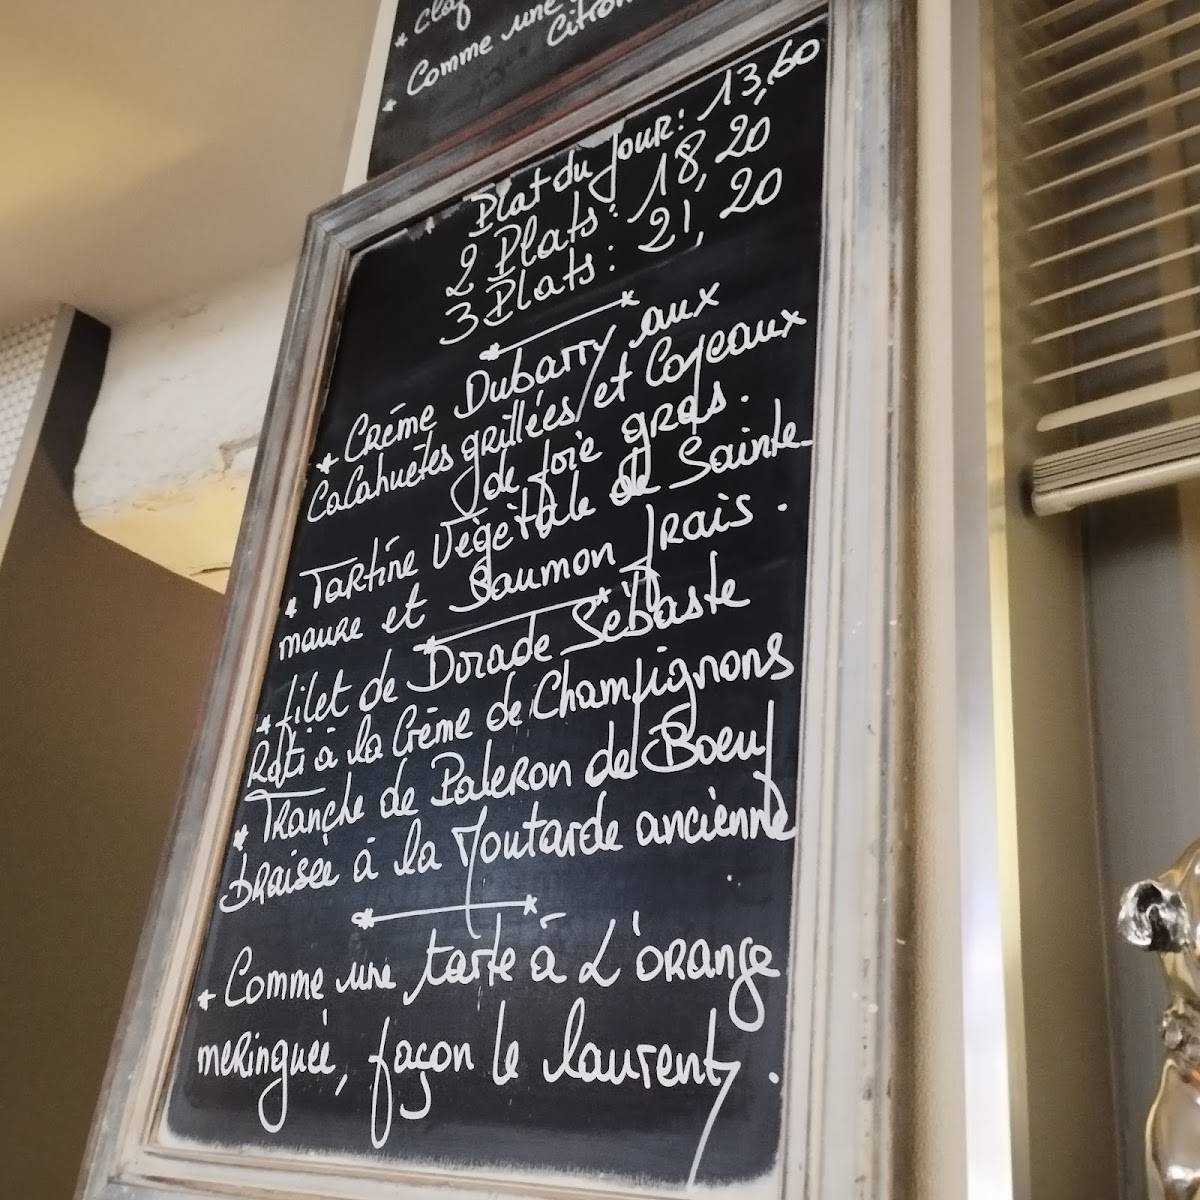 Le Laurenty menu